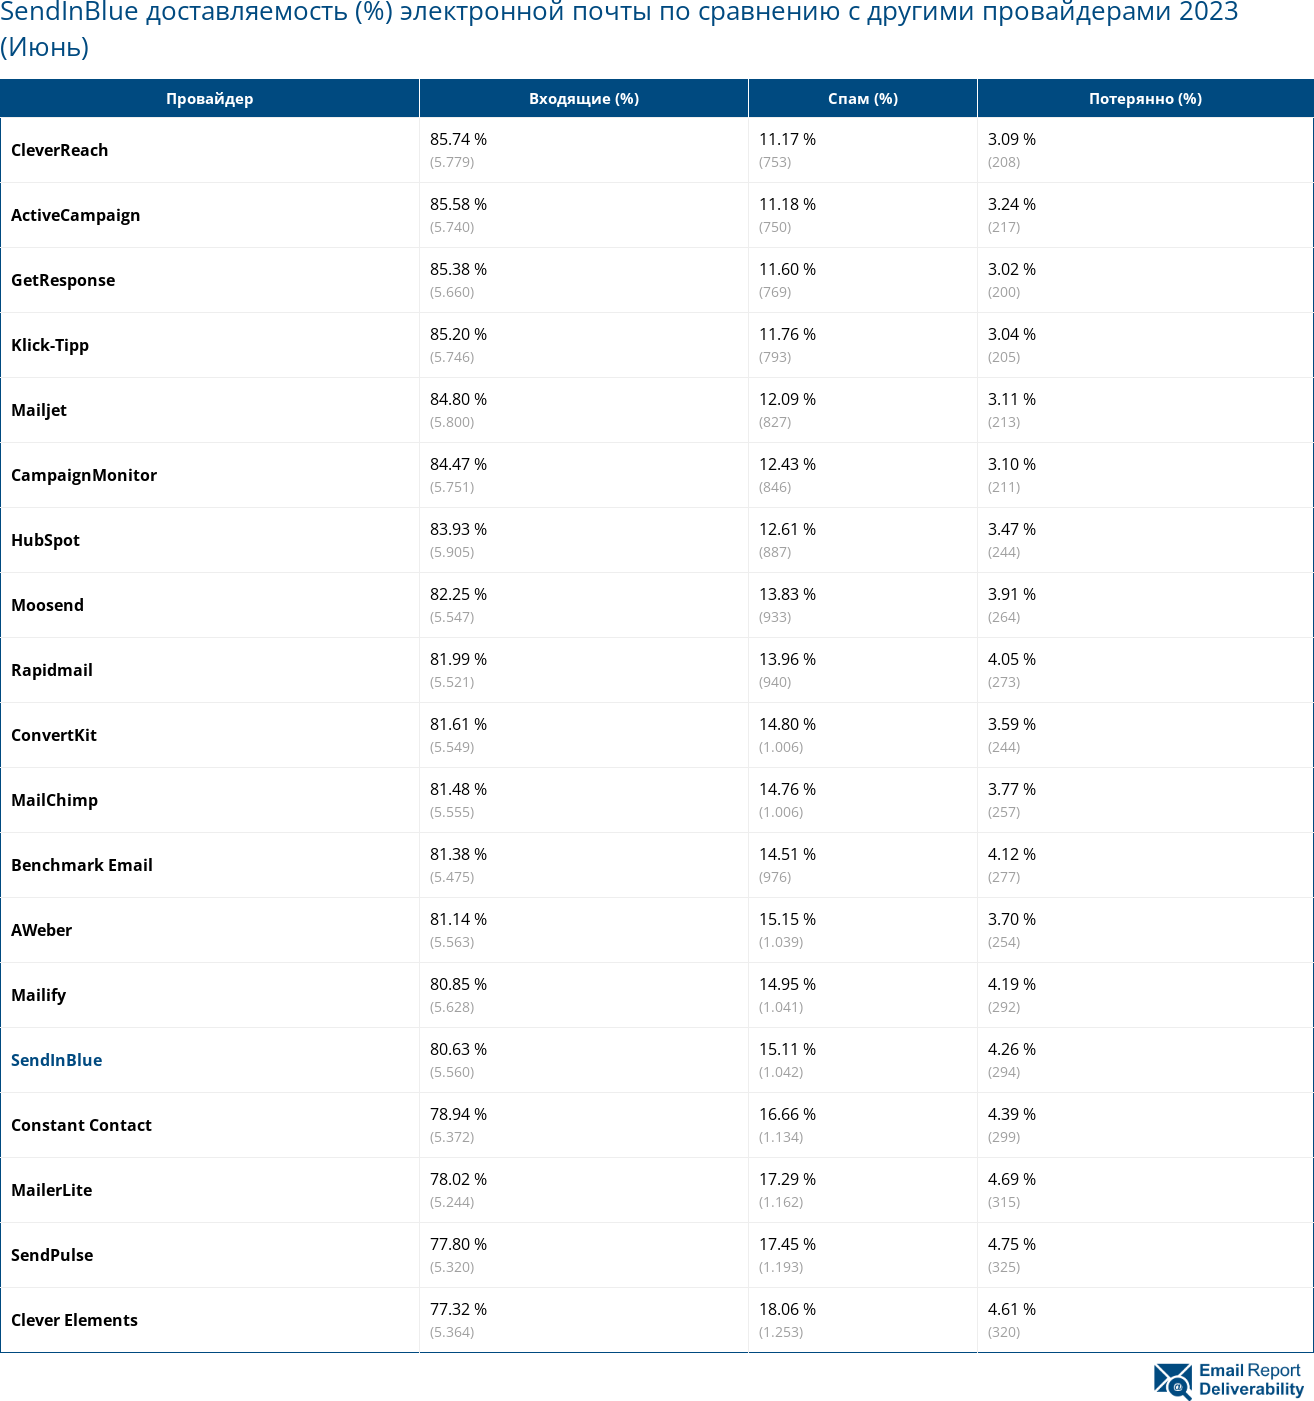 SendInBlue доставляемость (%) электронной почты по сравнению с другими провайдерами 2023 (Июнь)